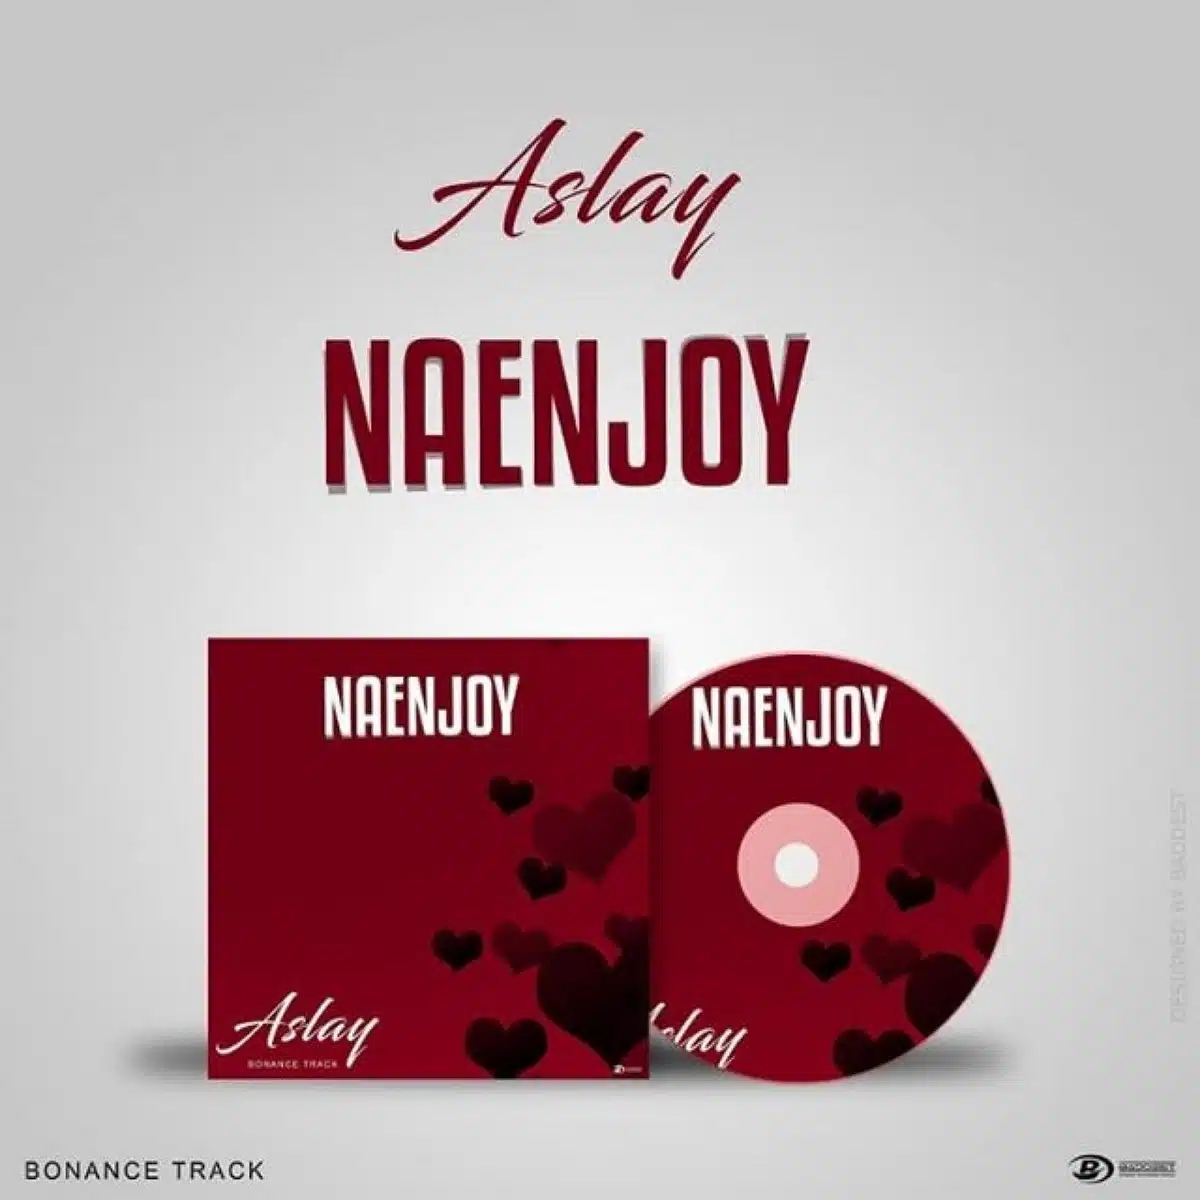 DOWNLOAD: Aslay – “Naenjoy” (Audio) Mp3